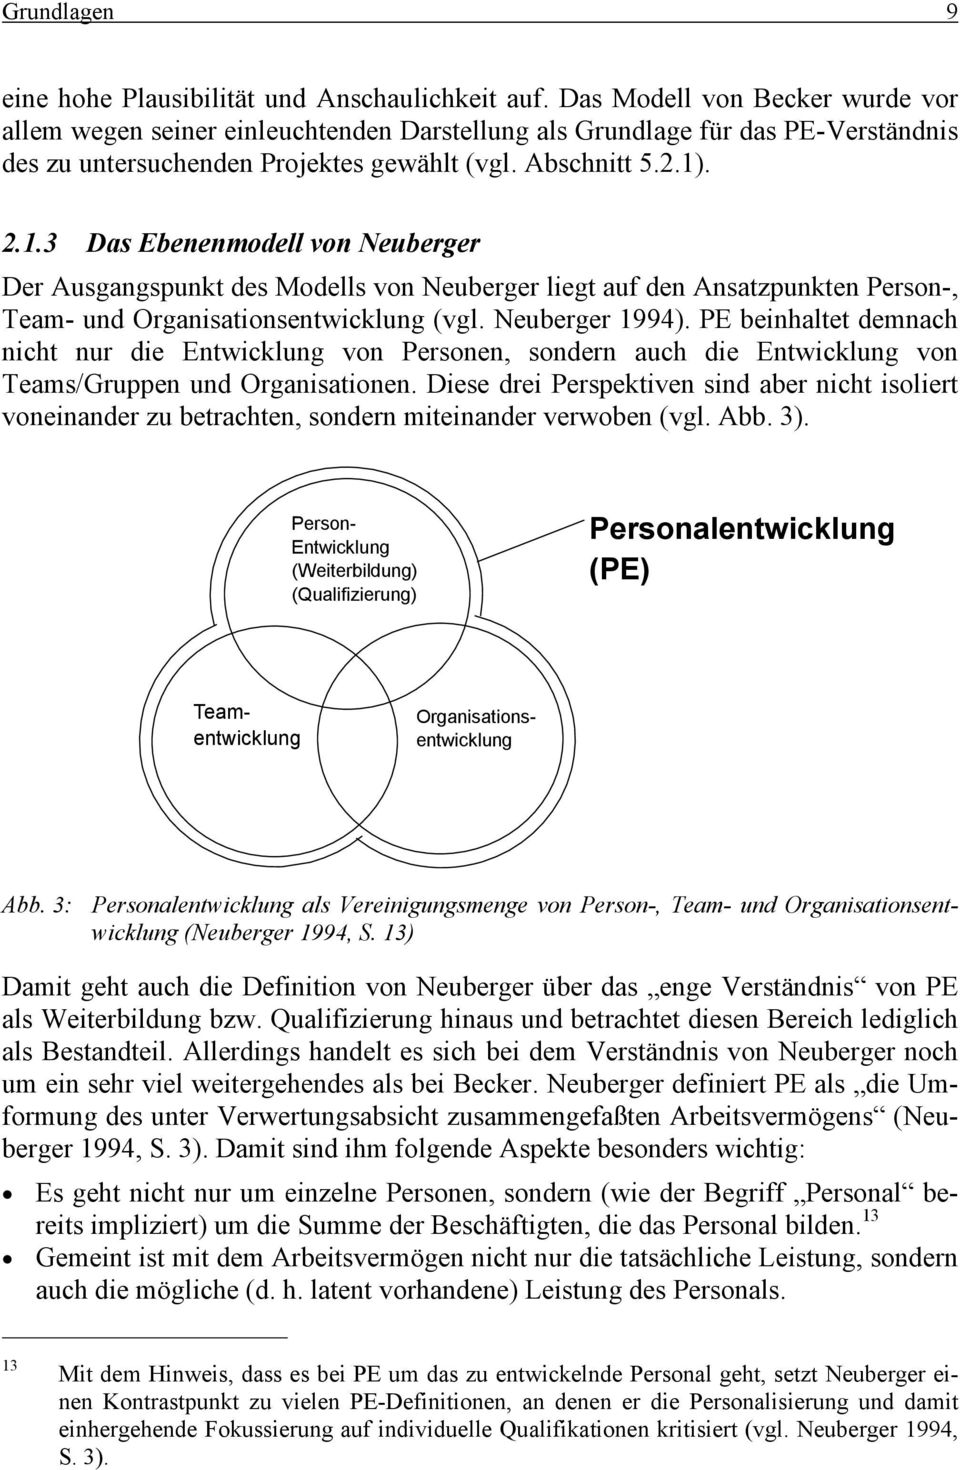 . 2.1.3 Das Ebenenmodell von Neuberger Der Ausgangspunkt des Modells von Neuberger liegt auf den Ansatzpunkten Person-, Team- und Organisationsentwicklung (vgl. Neuberger 1994).